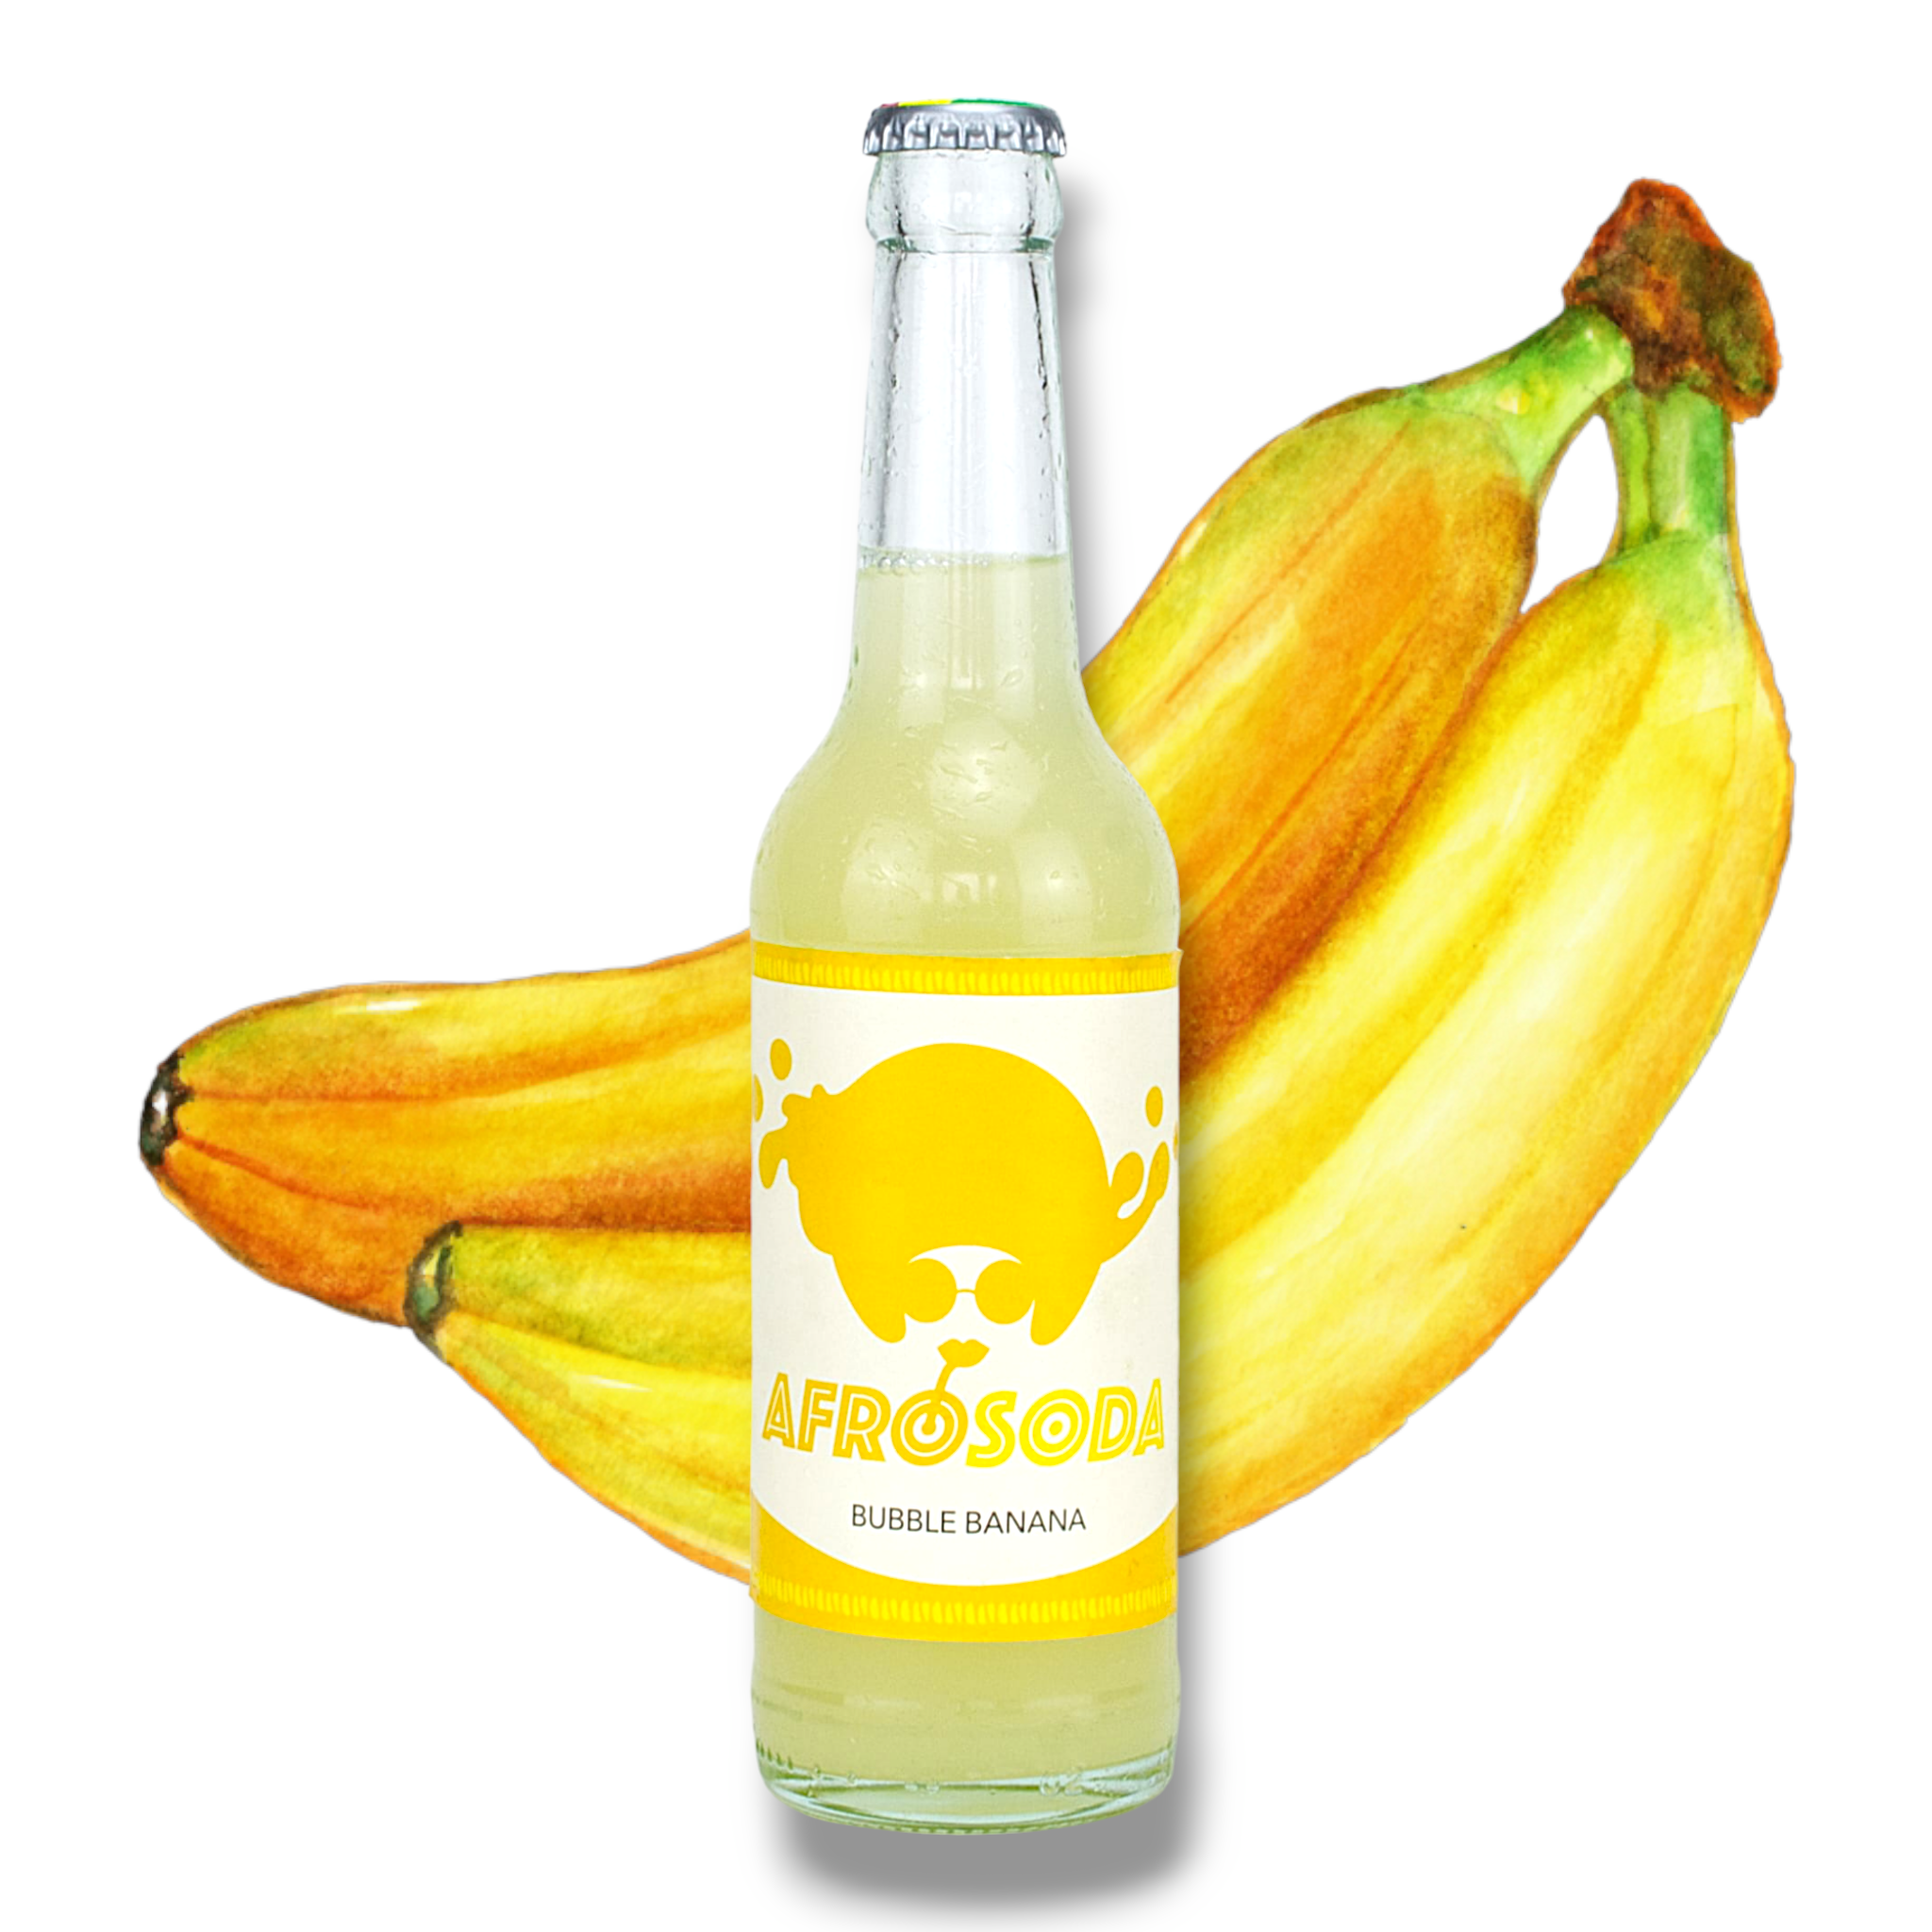 Neu! Afrosoda Bubble Banana 0,33l - Taste The Beat - Erfrischungsgetränk mit Bananengeschmack